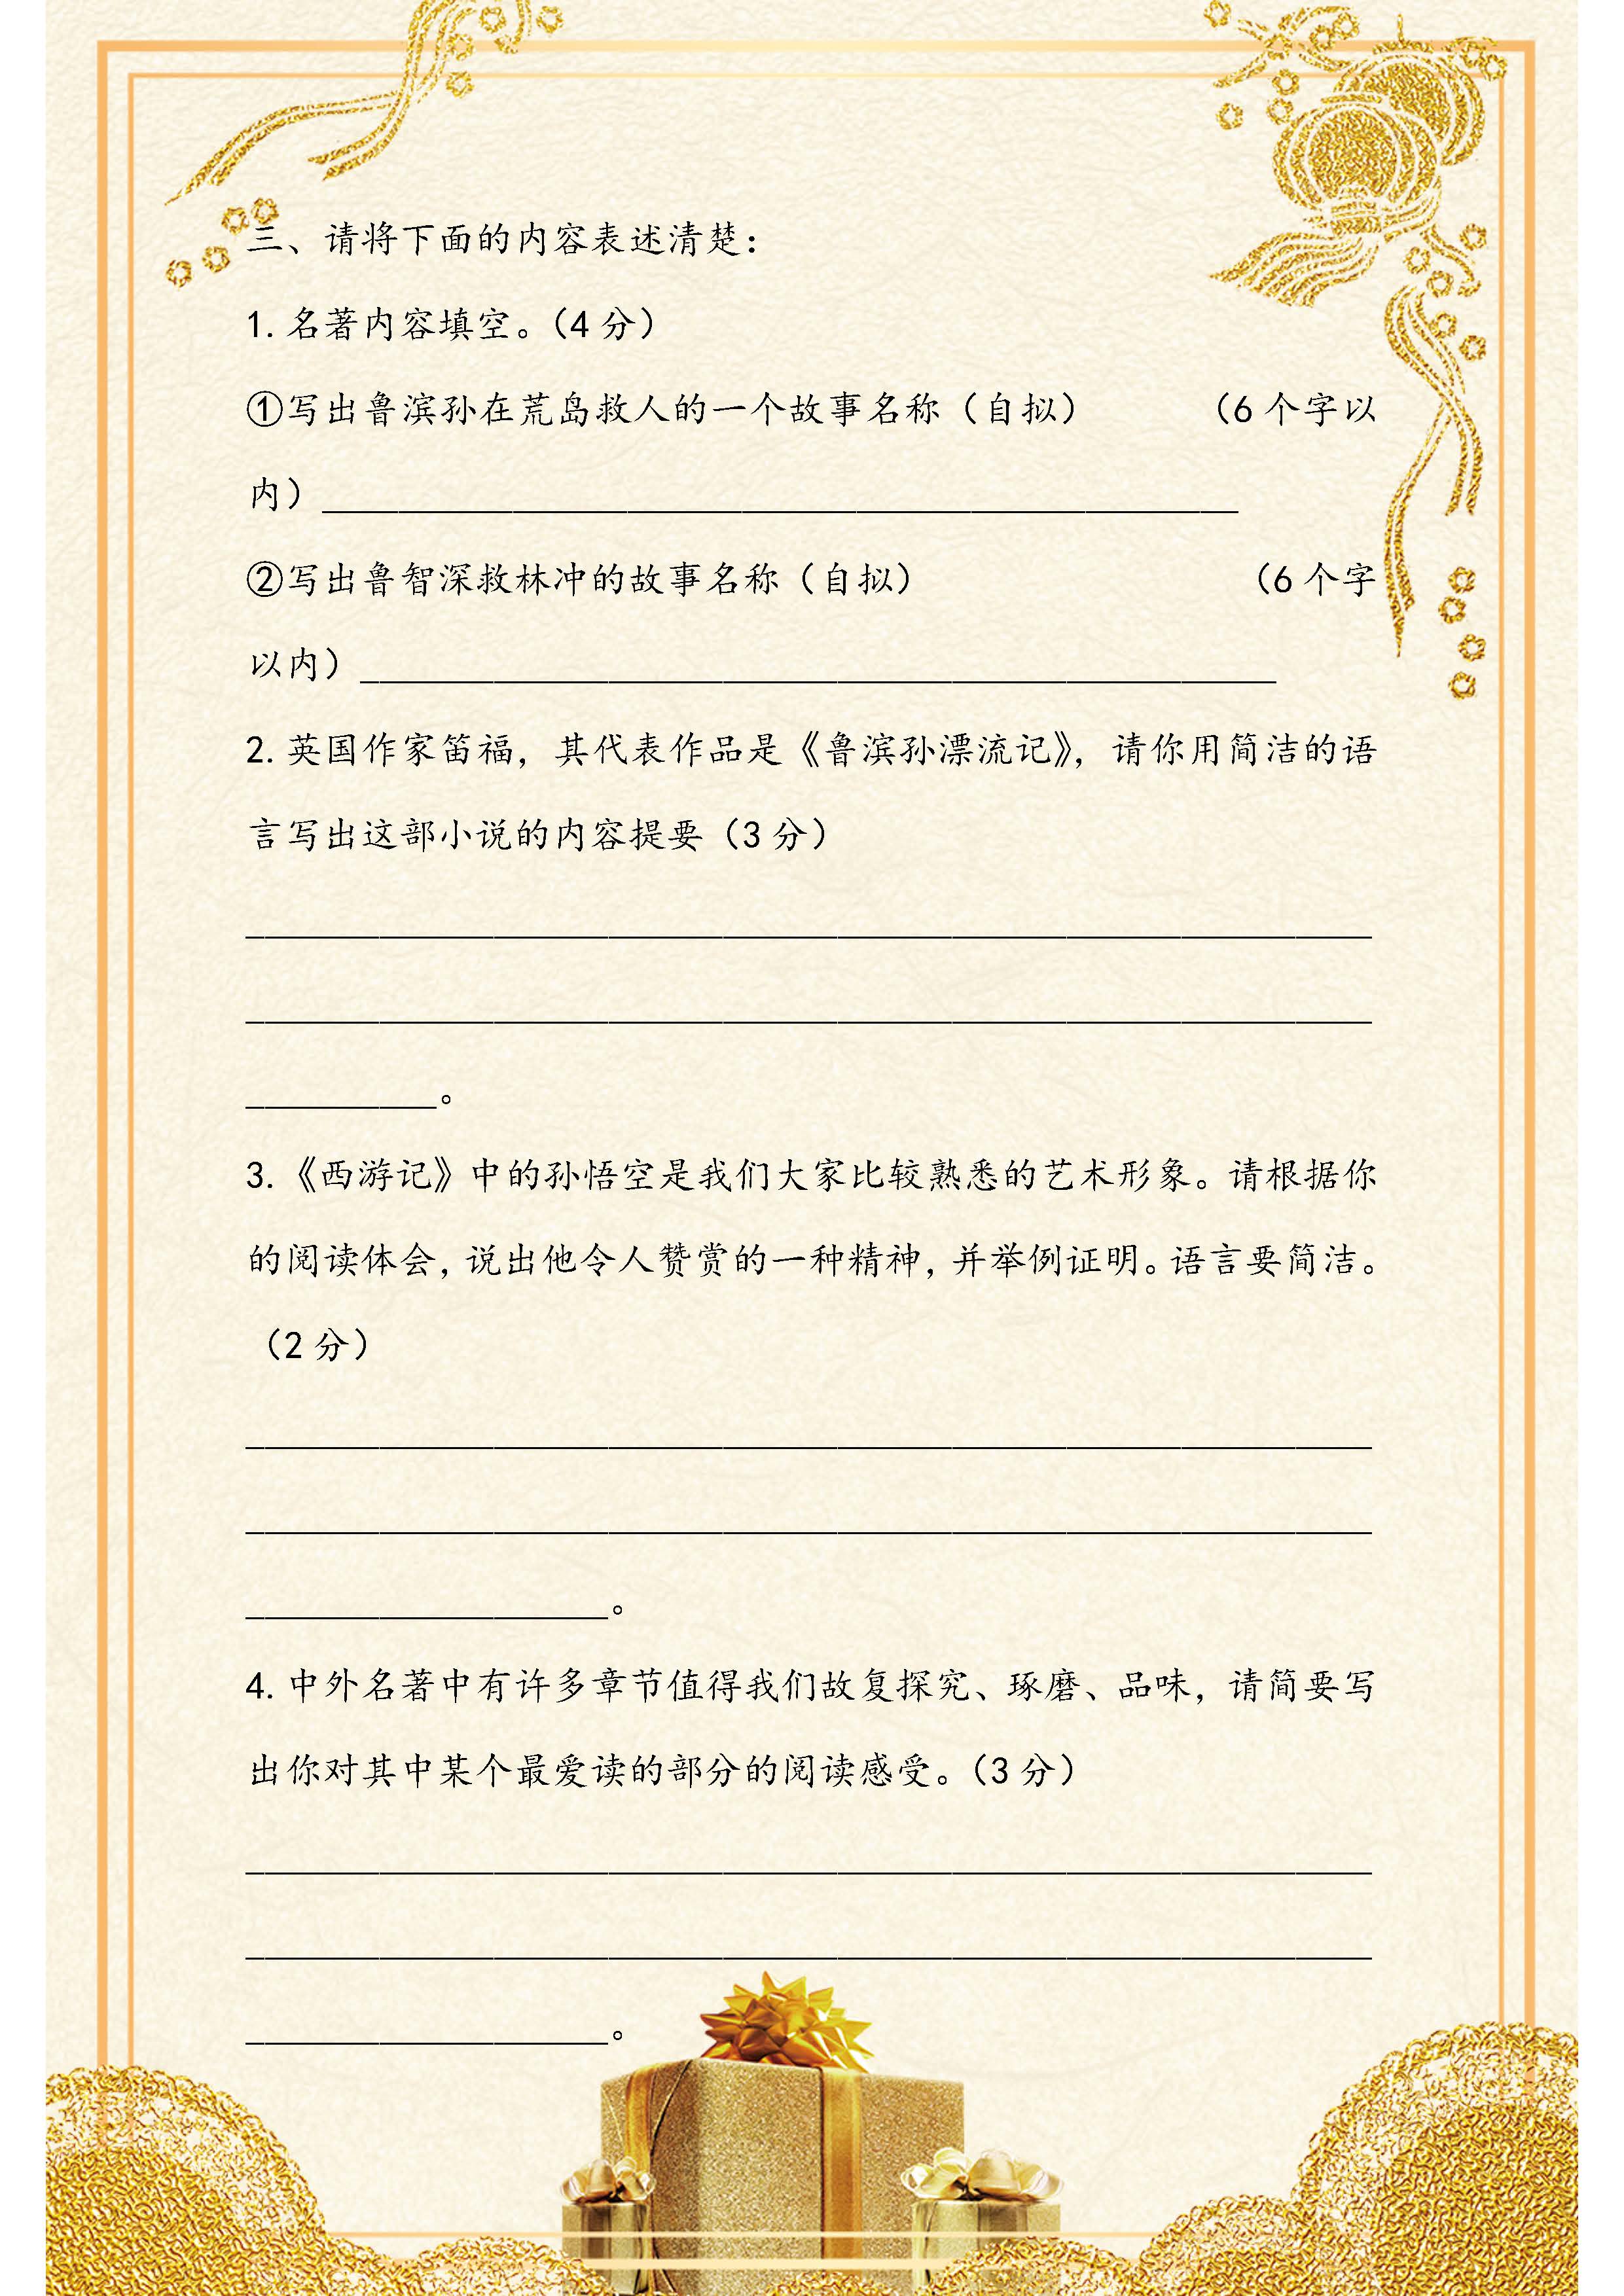 初中语文：名著阅读专题训练练习题！一共有两套题，请替孩子收藏